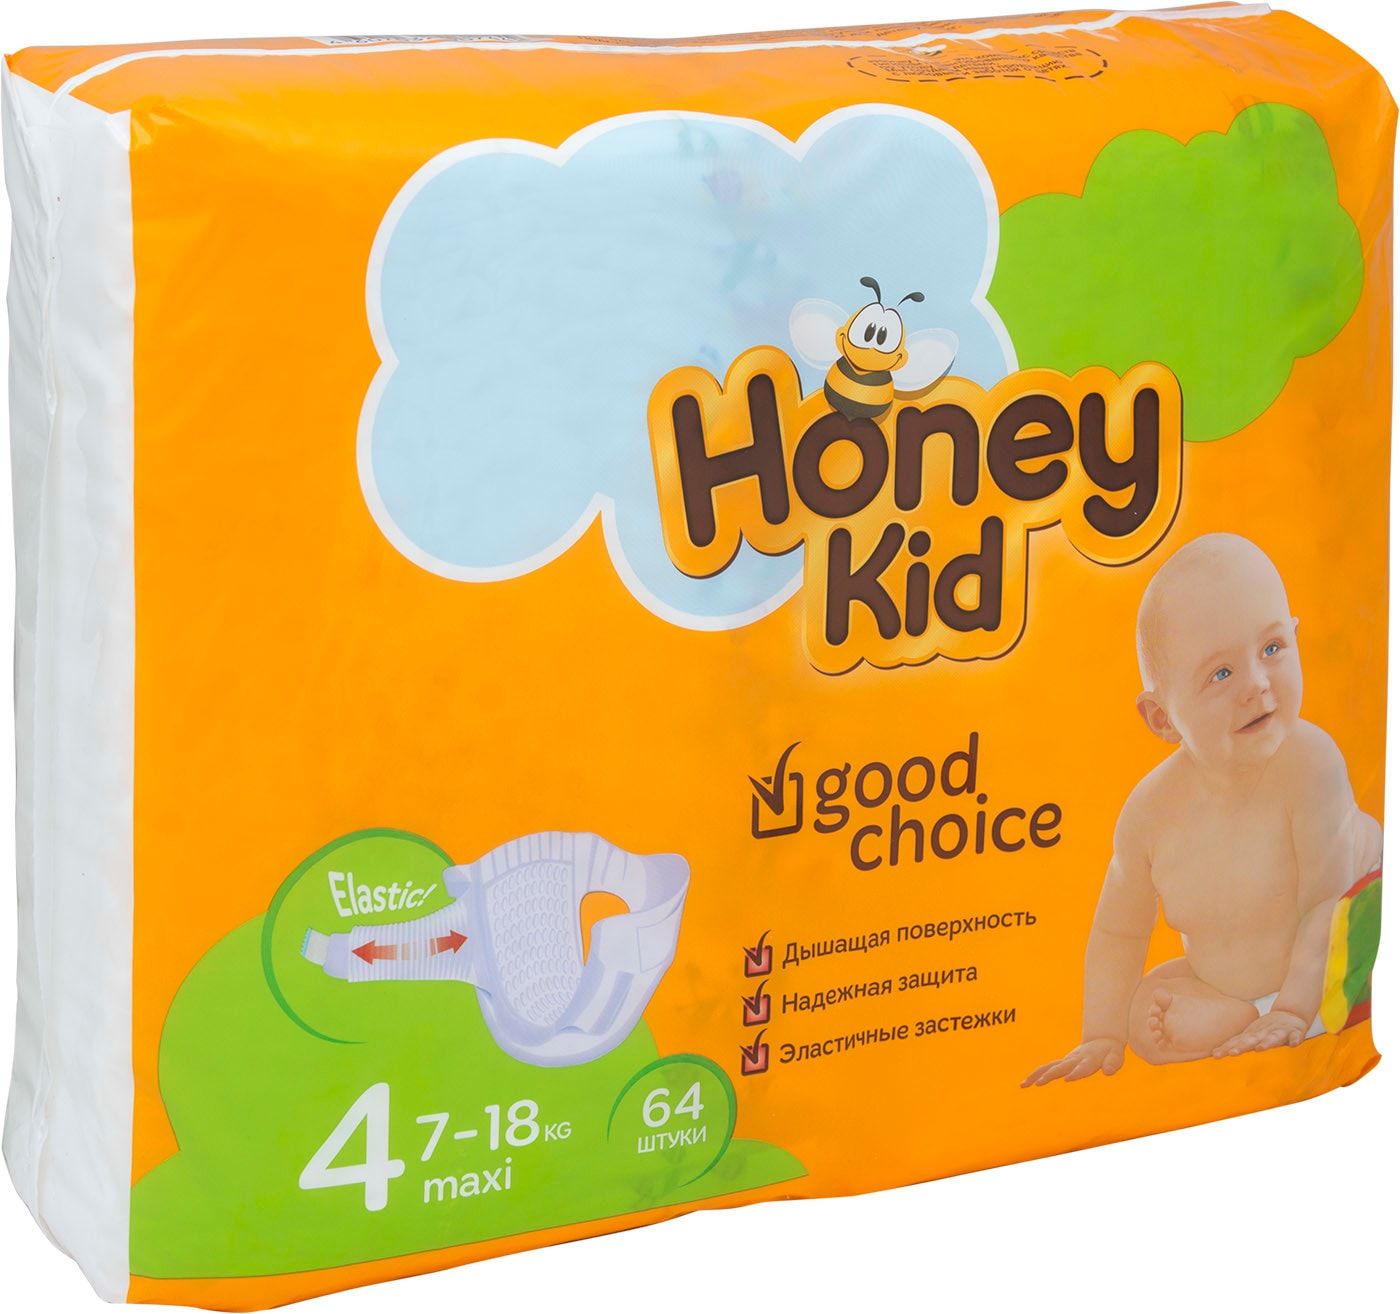 Хоней кид. Подгузники Хани КИД 4. Honey Kid подгузники 4 макси. Подгузники Honey Kid 4 Maxi (7-18кг) 64 шт..